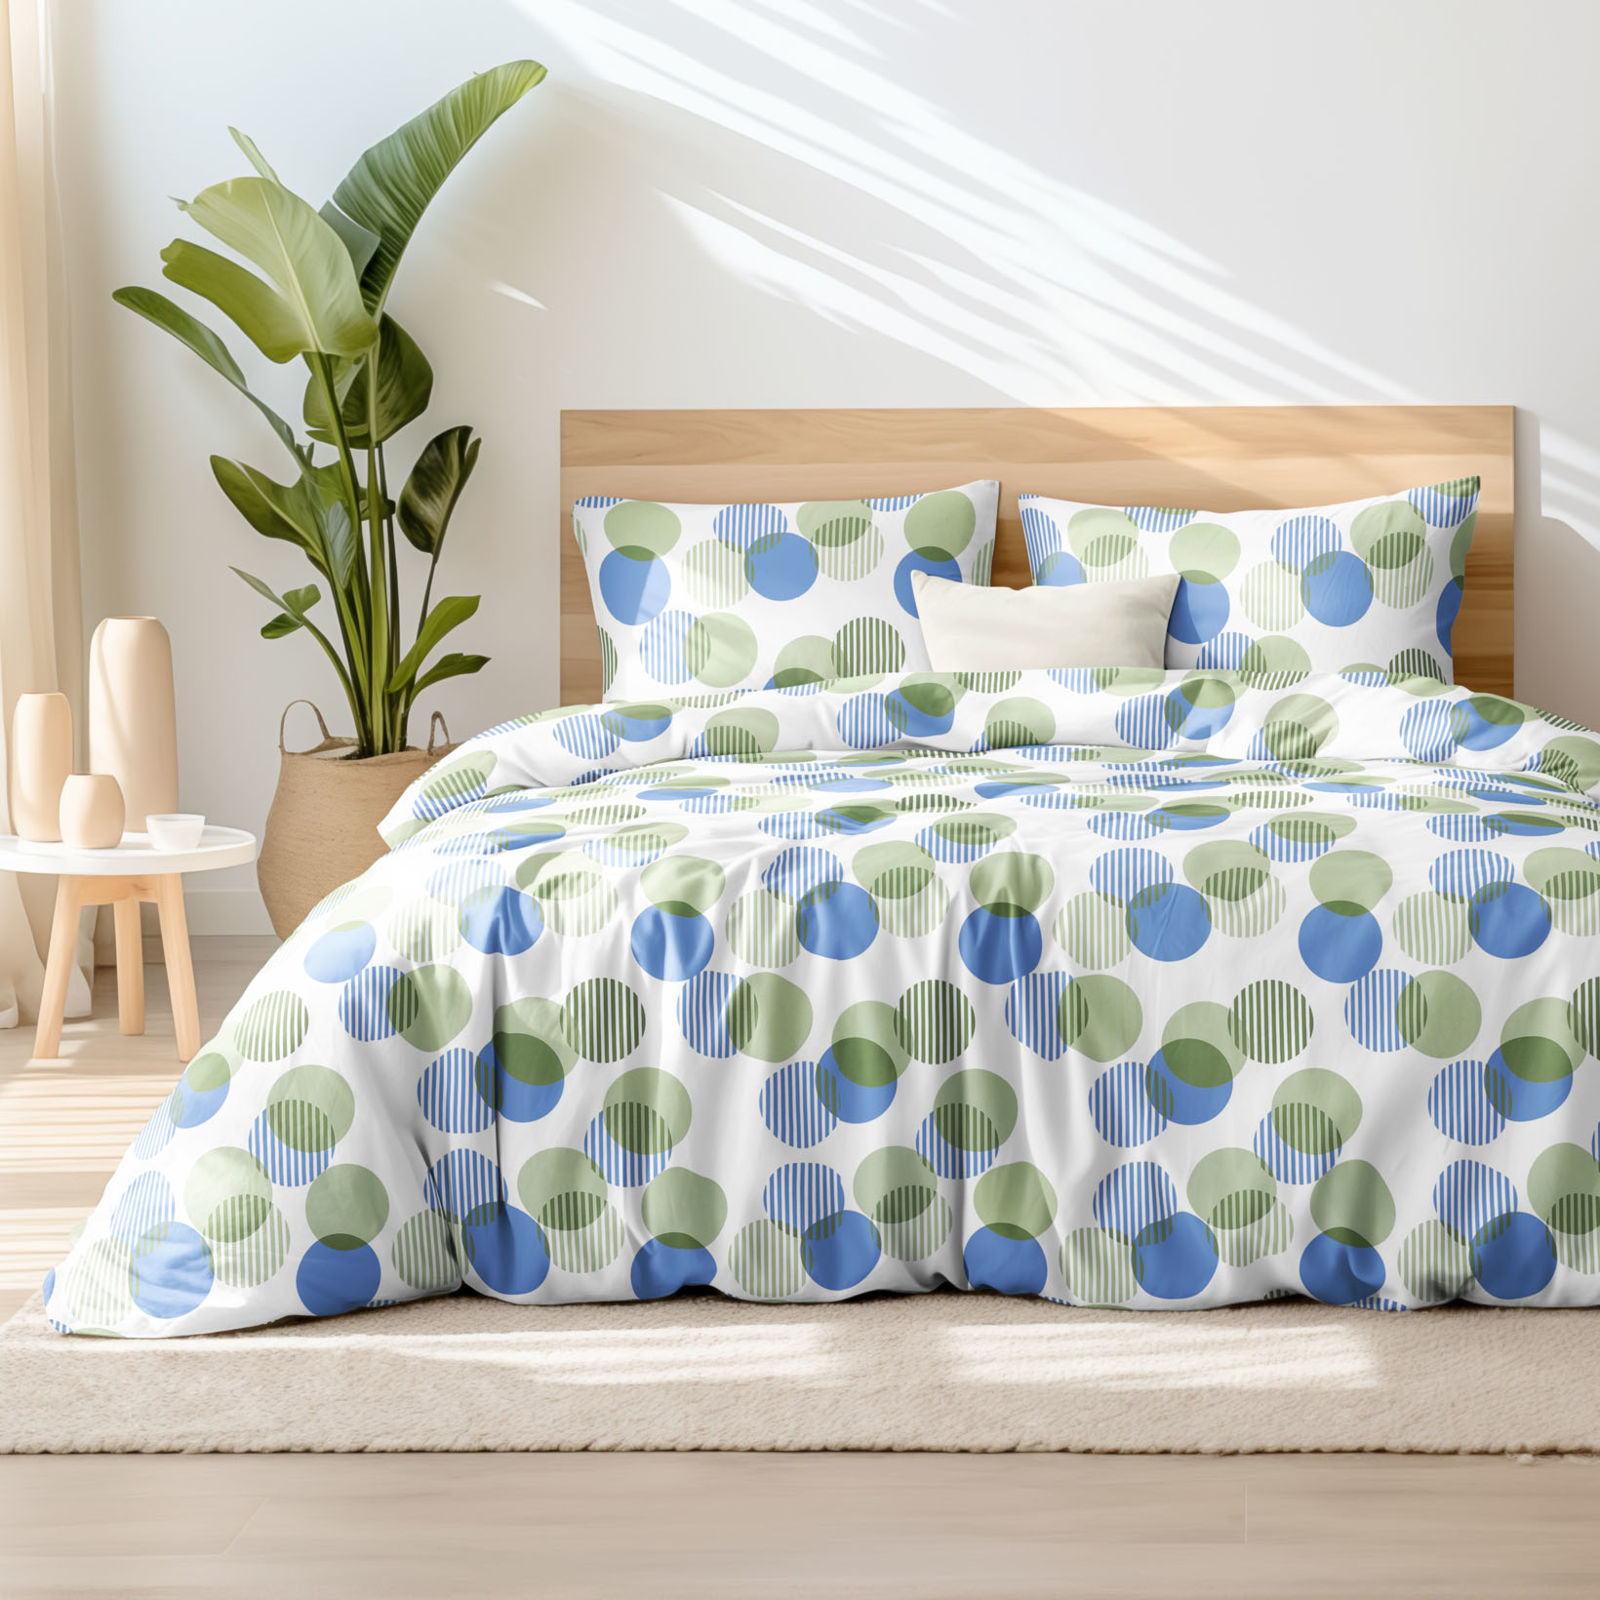 Saténové posteľné obliečky Deluxe - zelenomodré prúžkované kruhy